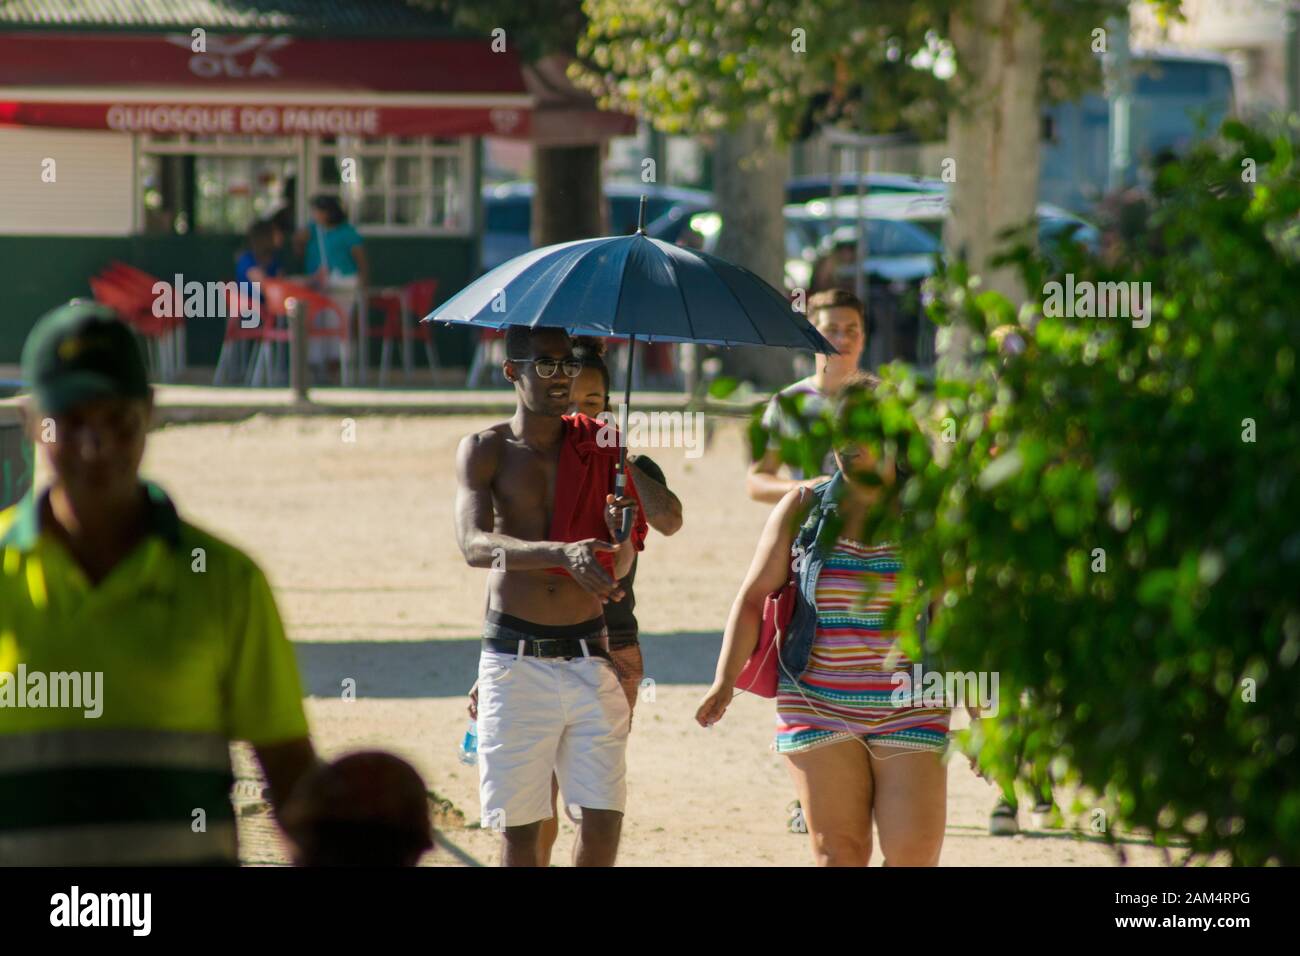 Coimbra, PORTUGAL - 16. Juli 2016 - EIN Mann verwendet einen Regenschirm, um sich während einer Hitzewelle in Coimbra Portugal kühl zu halten Stockfoto